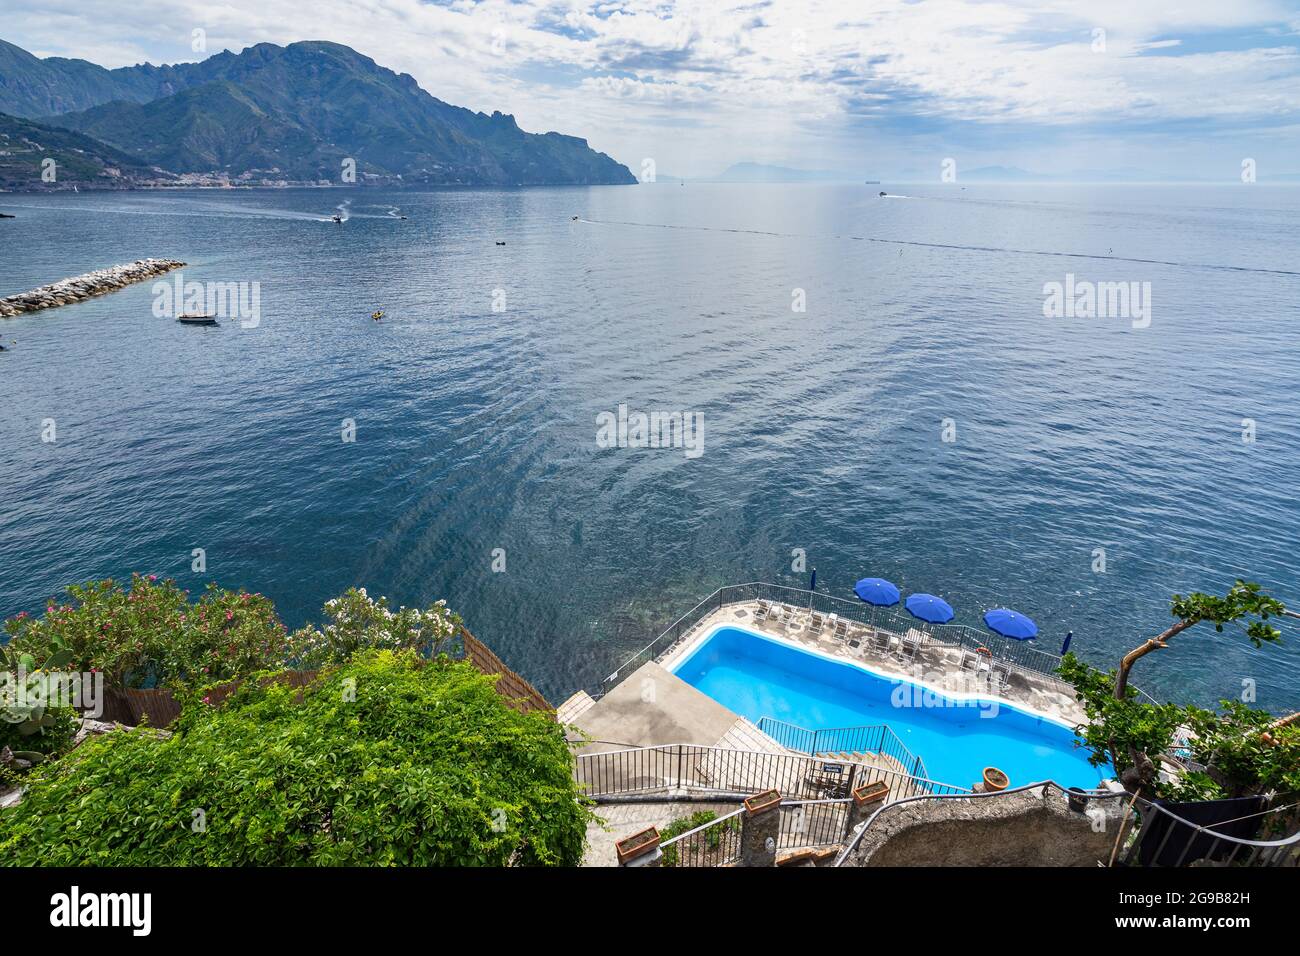 Une charmante piscine donnant sur la mer Méditerranée à Amalfi, en Italie Banque D'Images